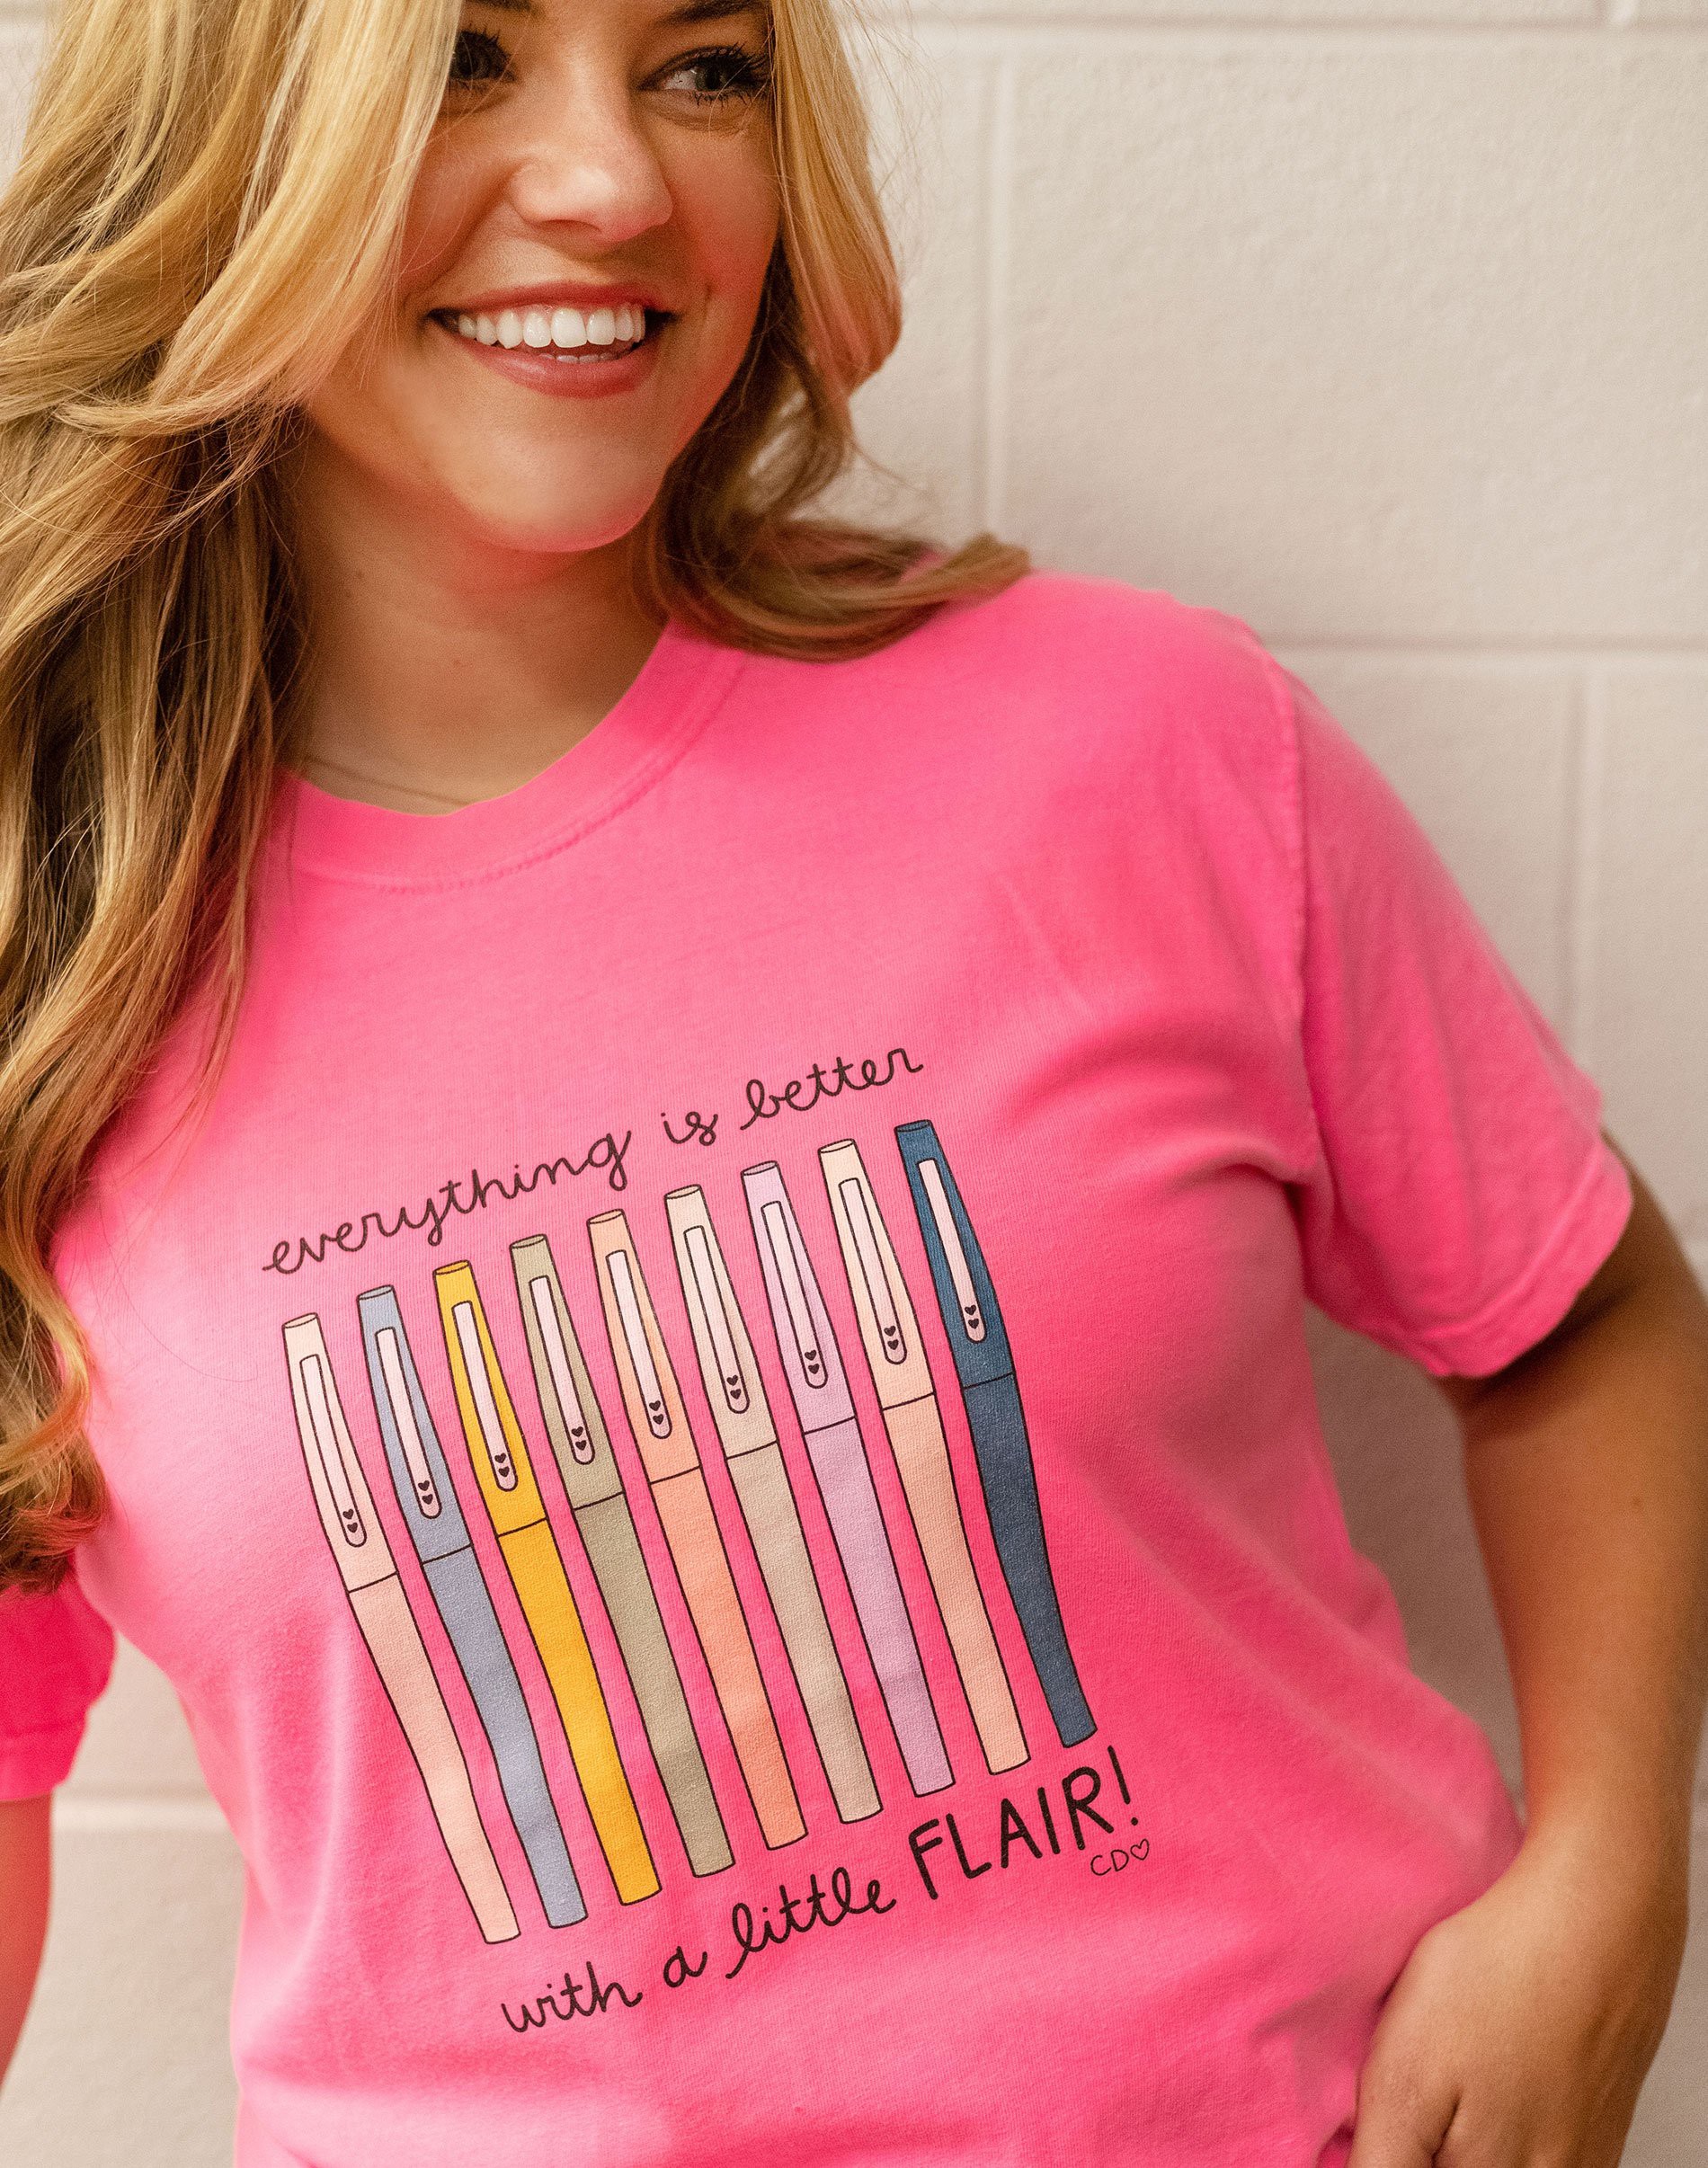 Womens Teaching with flair tshirt flair Pen, Teacher Gift T-Shirt